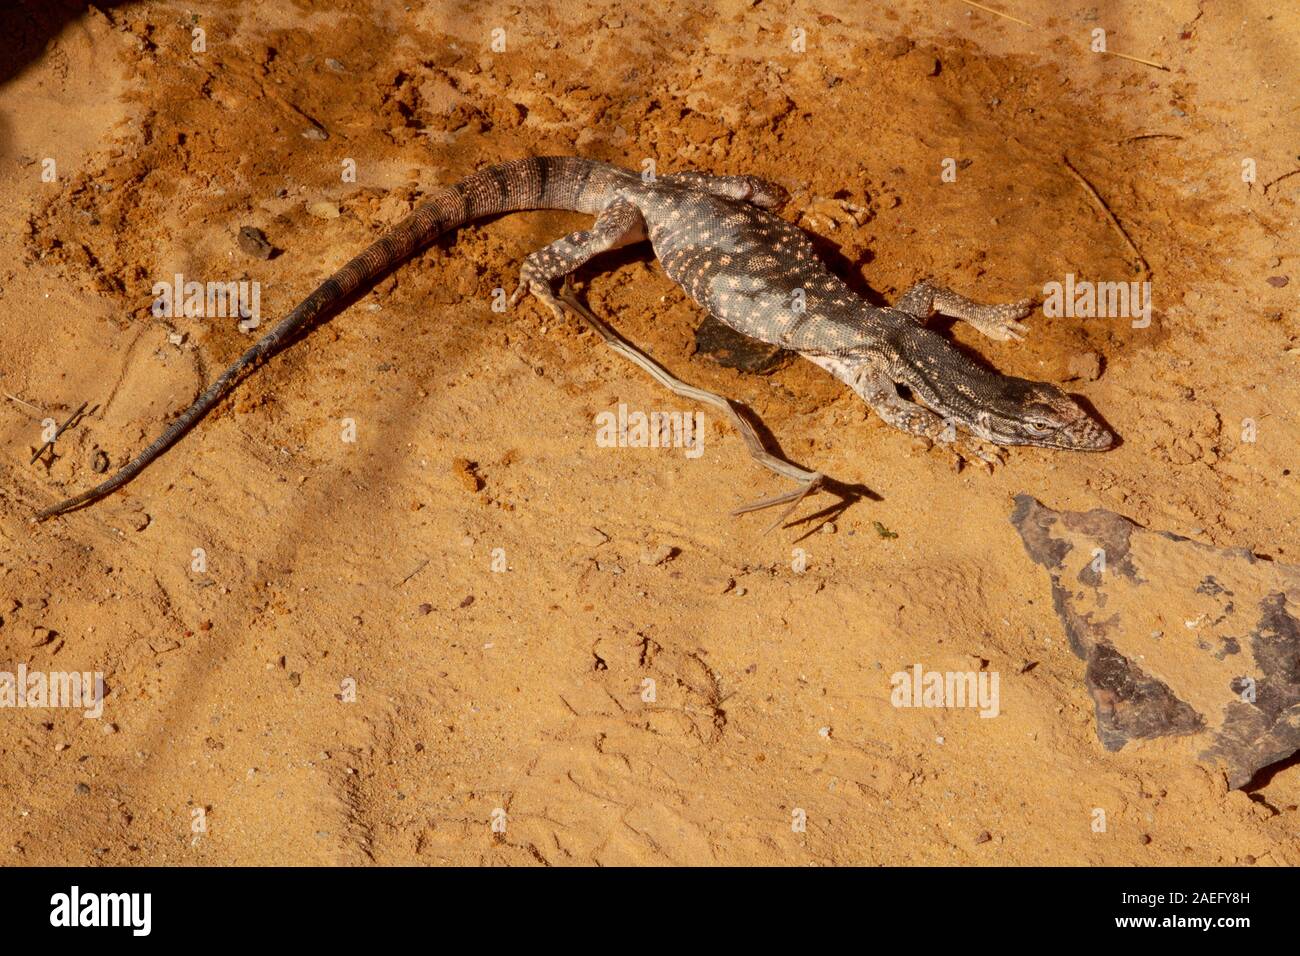 Moniteur du désert (Varanus griseus). une espèce de lézards de l'ordre Squamata trouvés dans toute l'Afrique du Nord et l'Asie centrale et du Sud. Banque D'Images